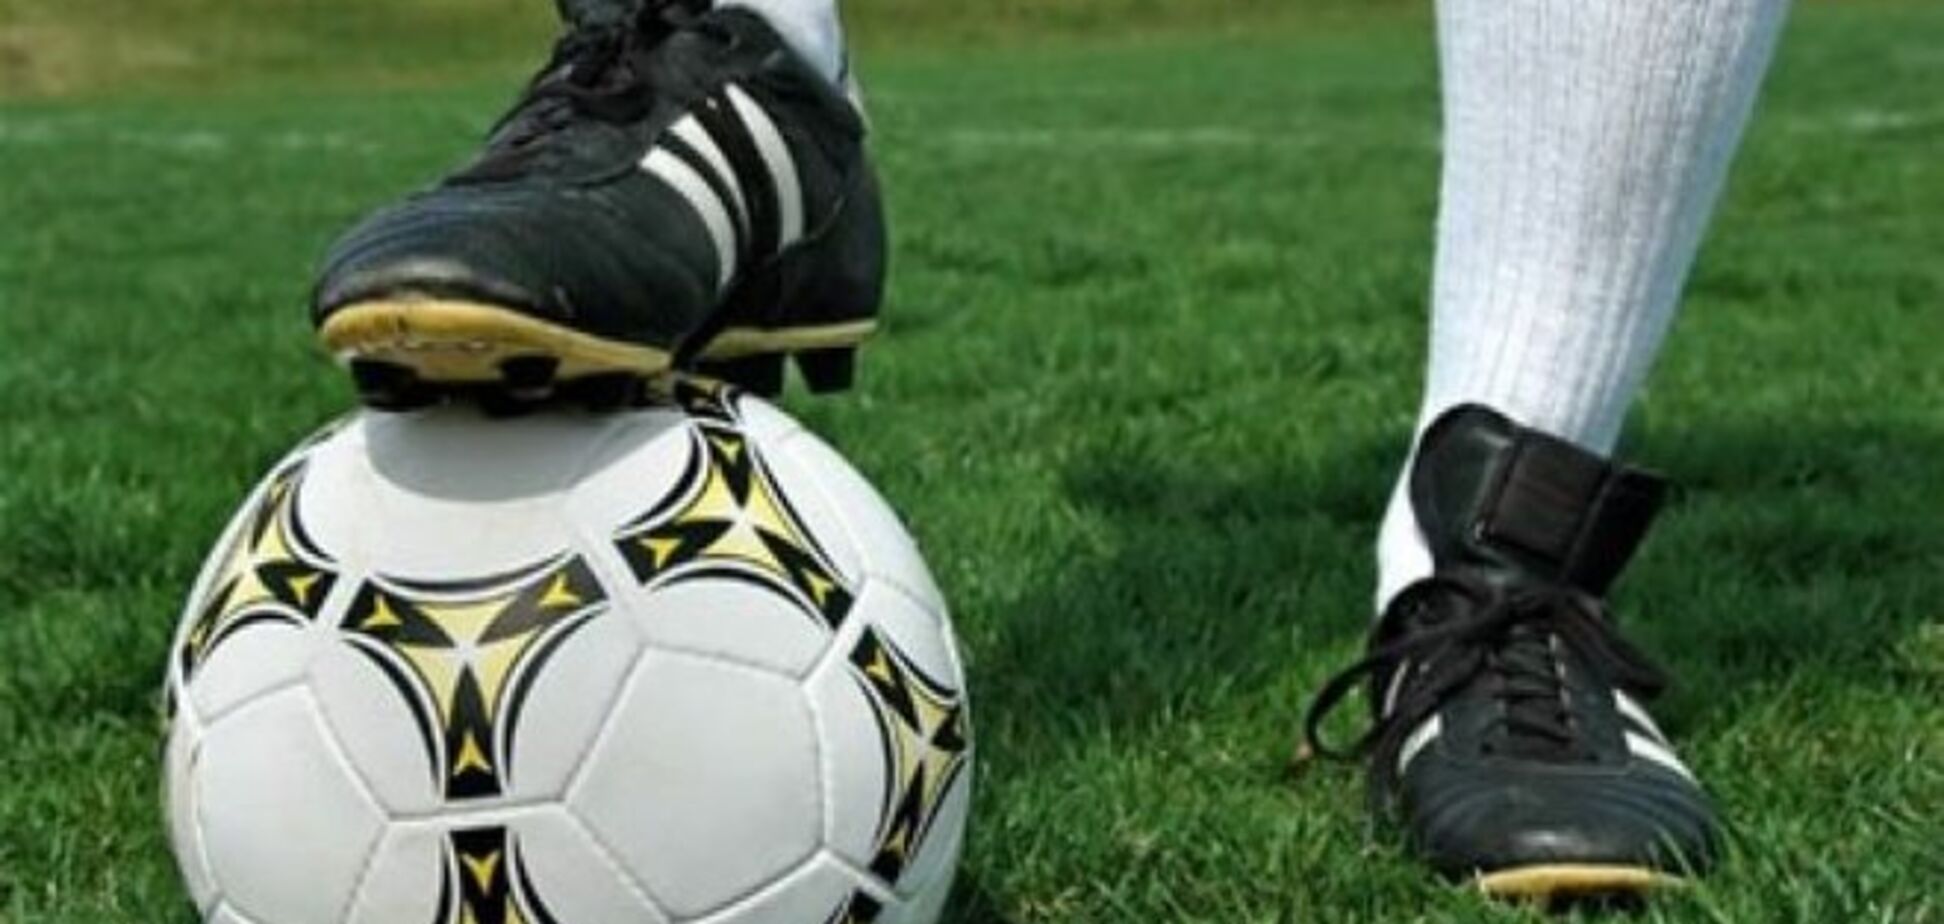 ФФУ обвинили в хищении 750 тысяч гривен на мячах для детей